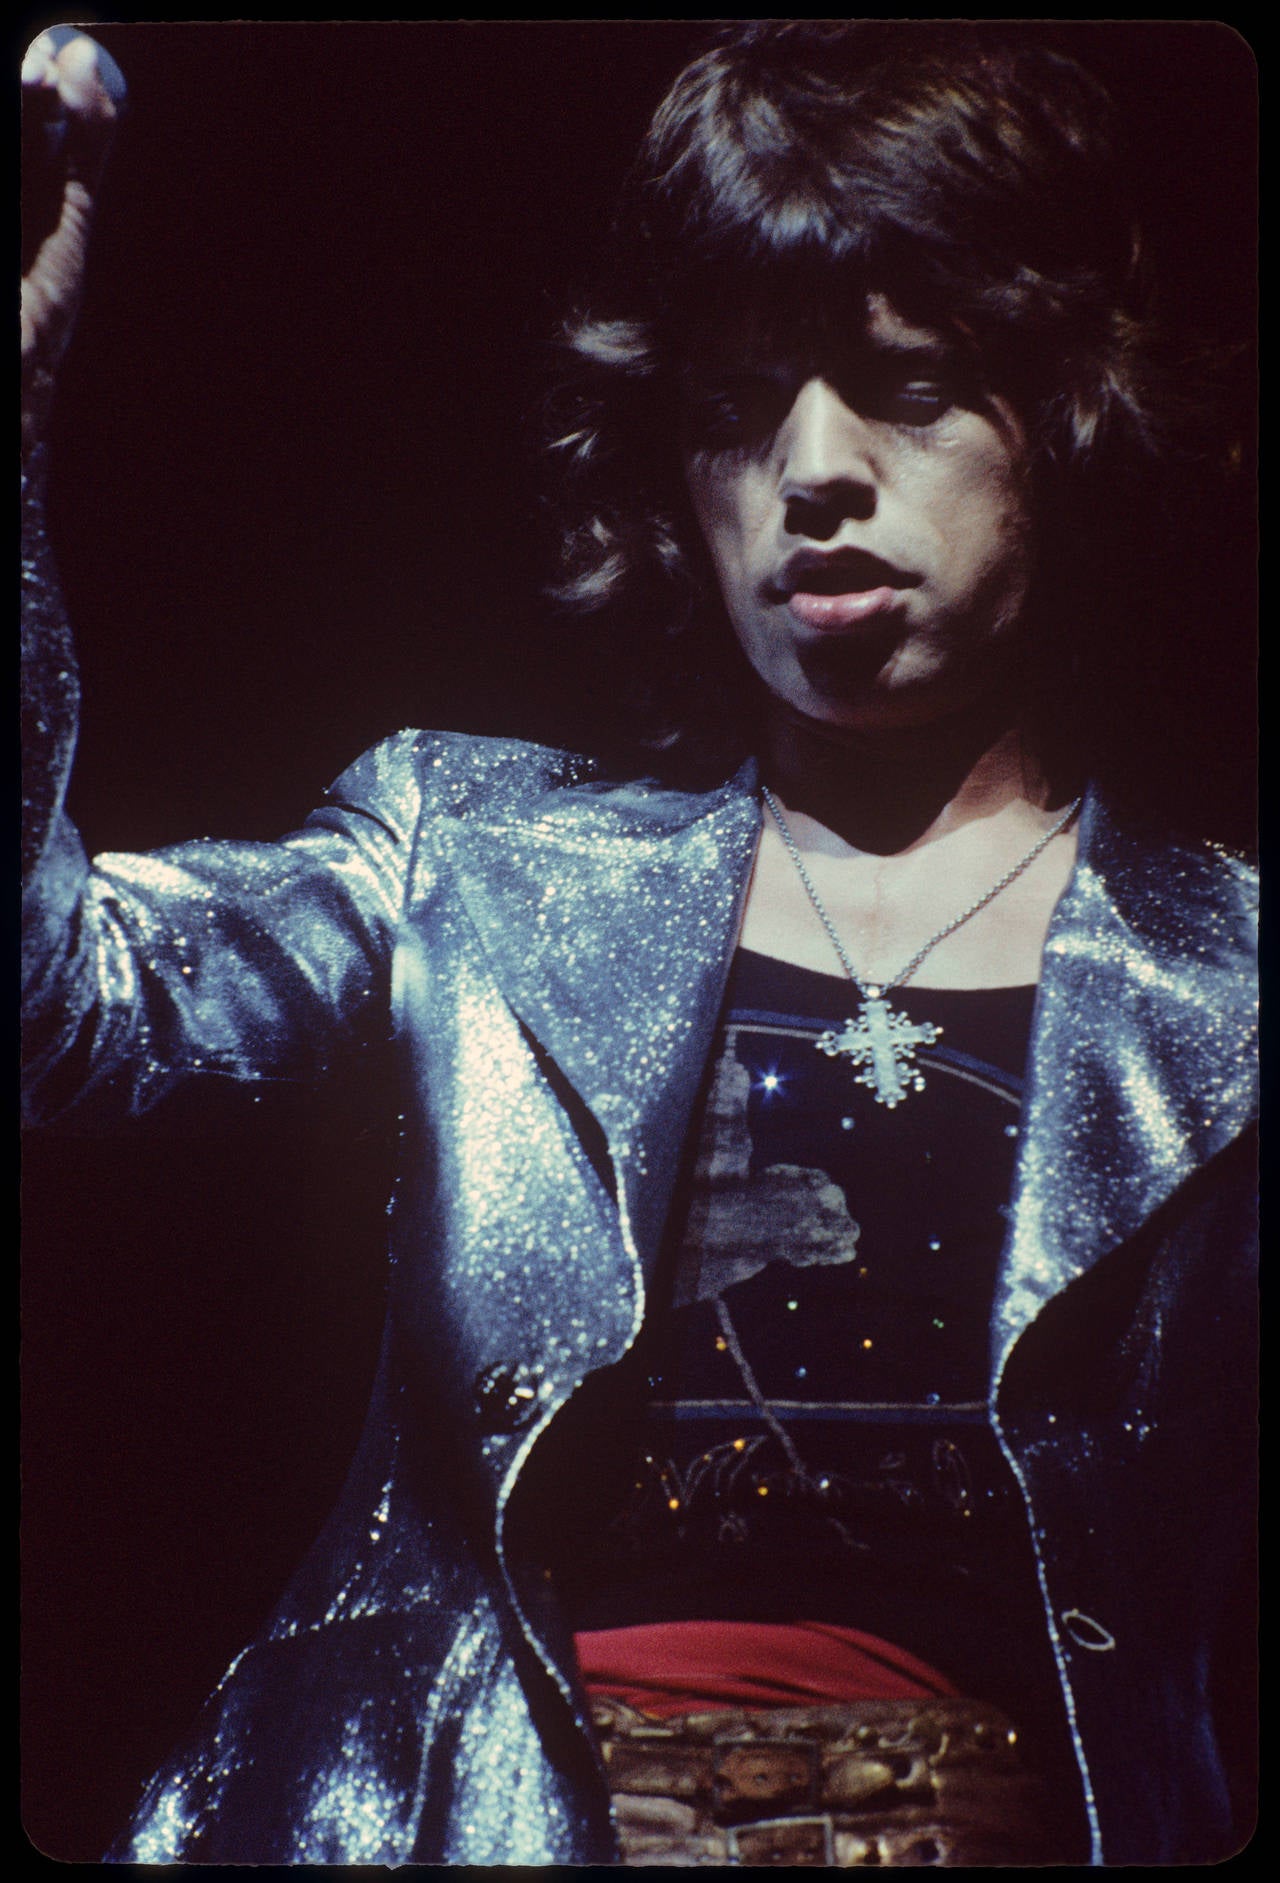 Ethan Russell Portrait Photograph - Mick Jagger "Cross"